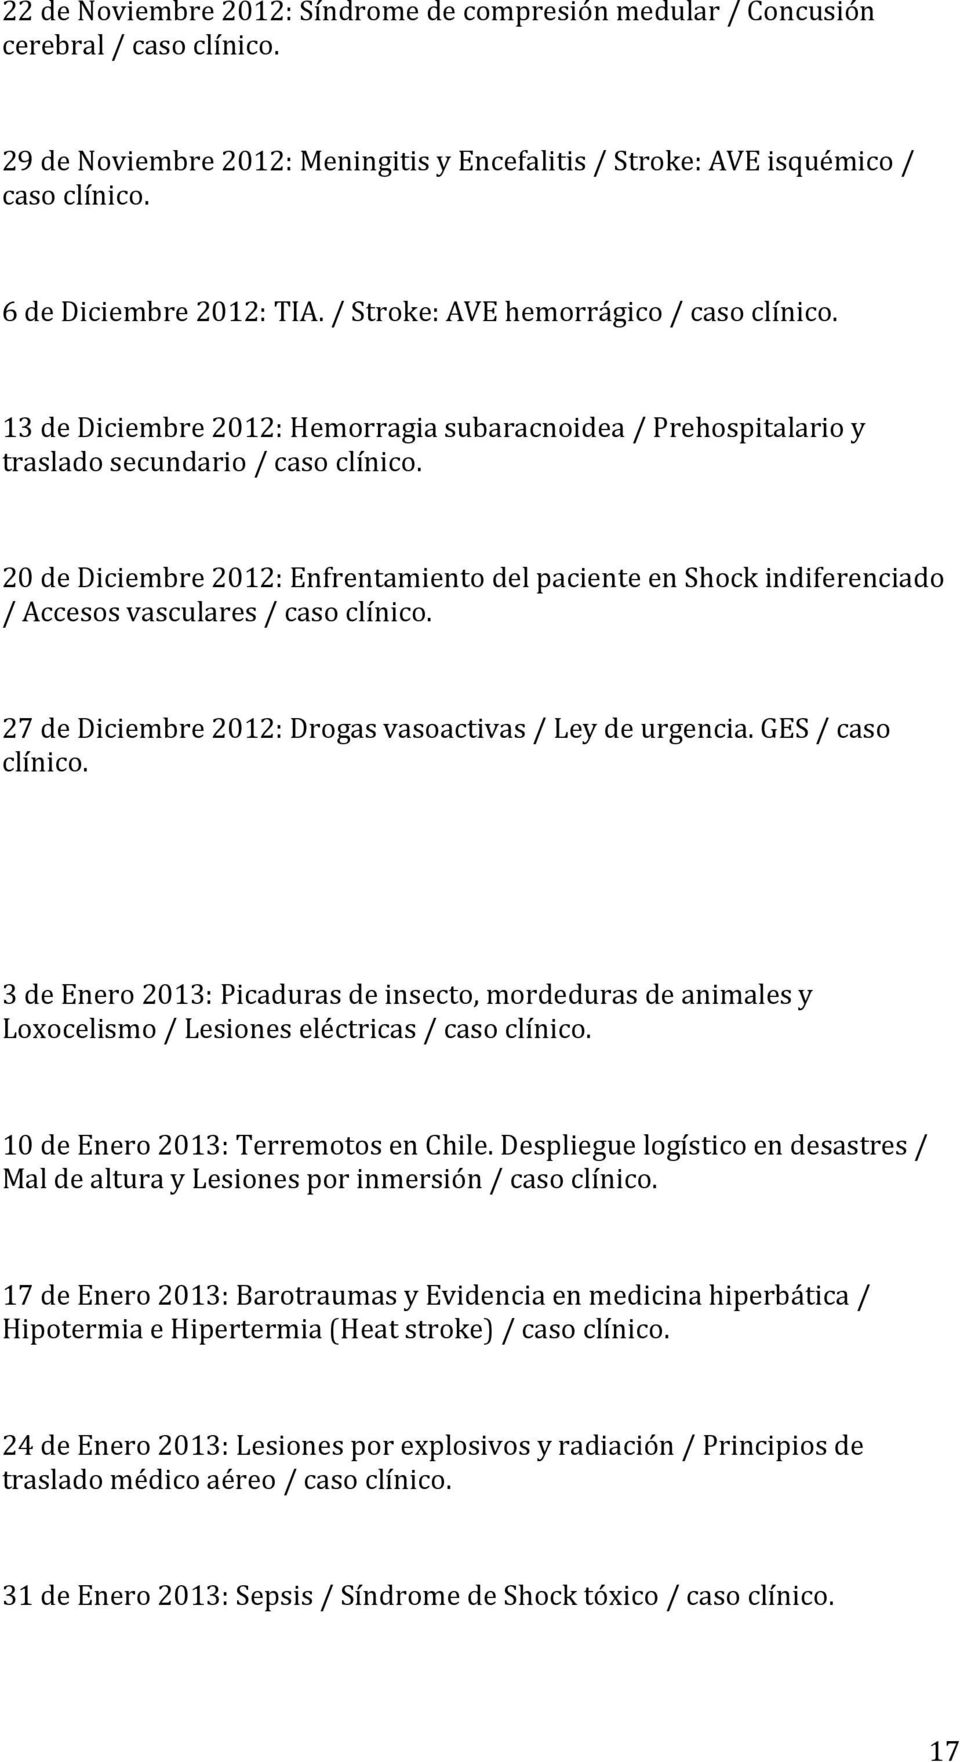 20 de Diciembre 2012: Enfrentamiento del paciente en Shock indiferenciado / Accesos vasculares / caso clínico. 27 de Diciembre 2012: Drogas vasoactivas / Ley de urgencia. GES / caso clínico.